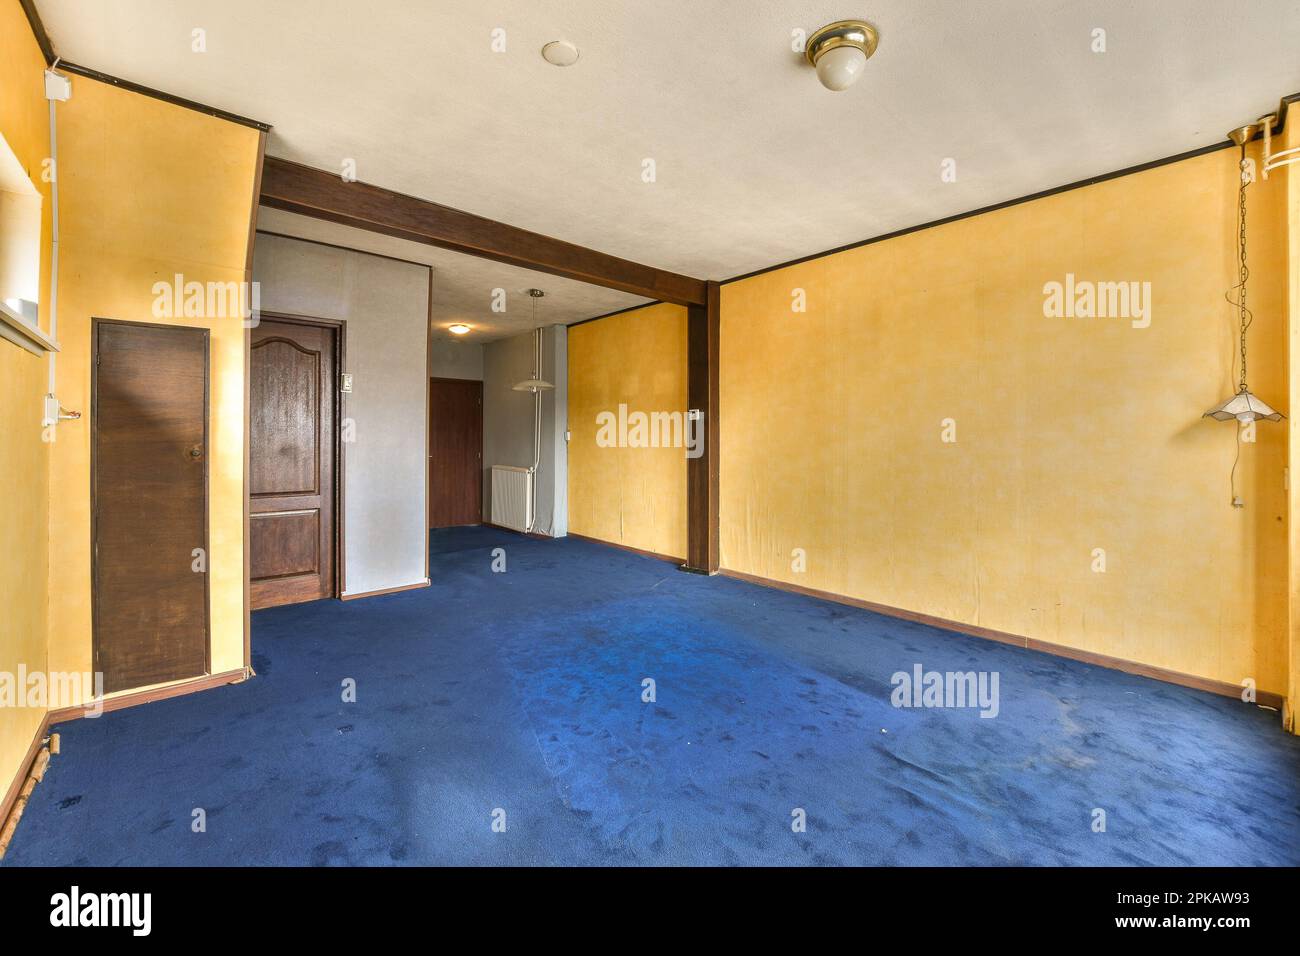 Ein leeres Zimmer mit gelben Wänden und blauem Teppich in der Mitte des Zimmers, es gibt eine Tür, die zu einem anderen Zimmer führt Stockfoto